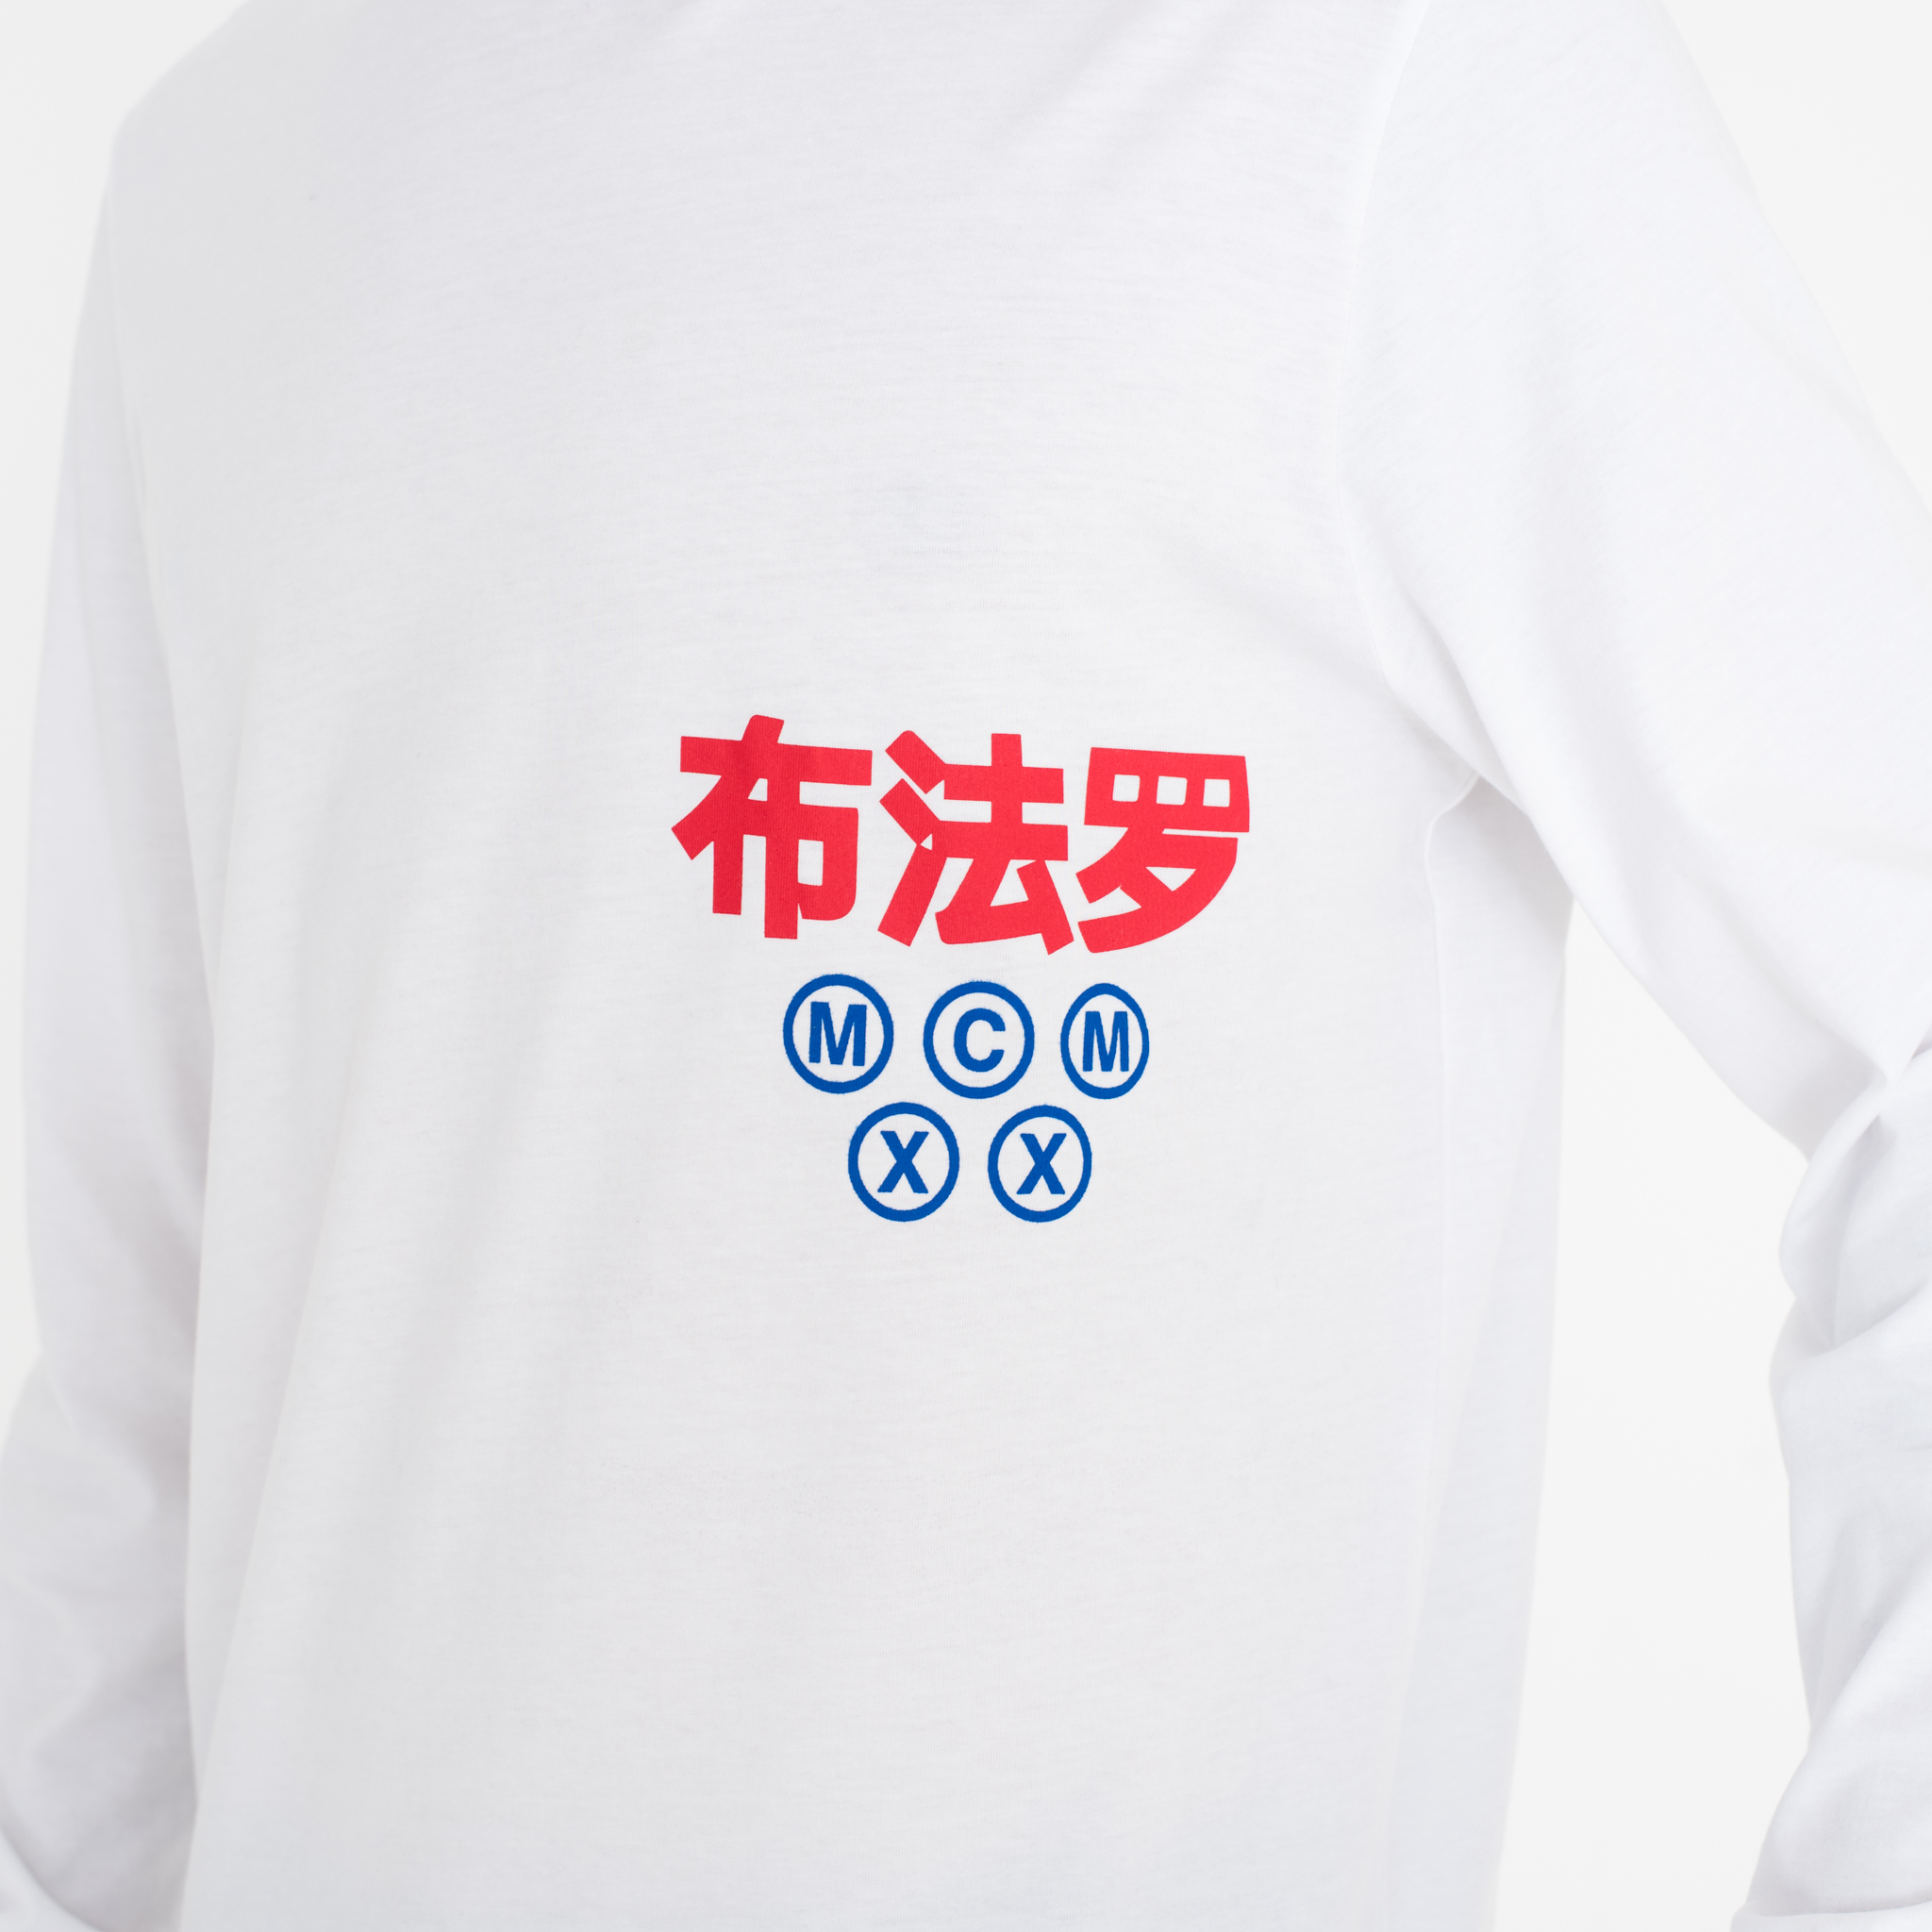 Camiseta New Era Graphic Wordmark, blanco